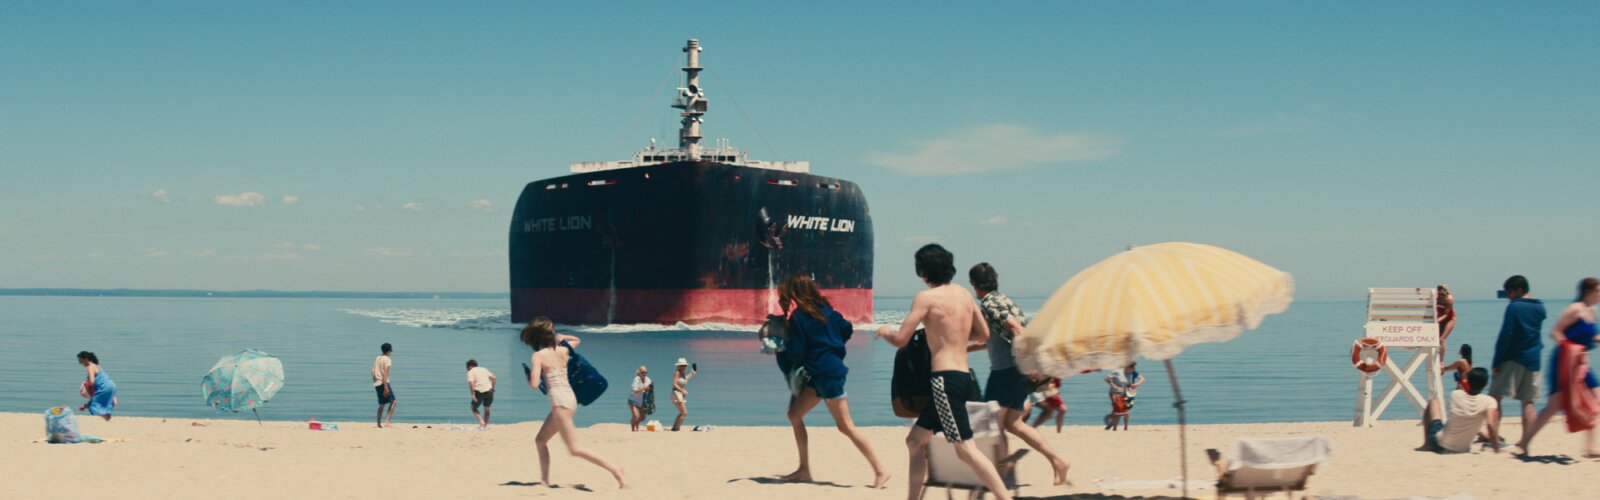 Ein Tanker kracht in die Küste, an der Urlauber baden. Eine Szene aus Leave the World Behind.